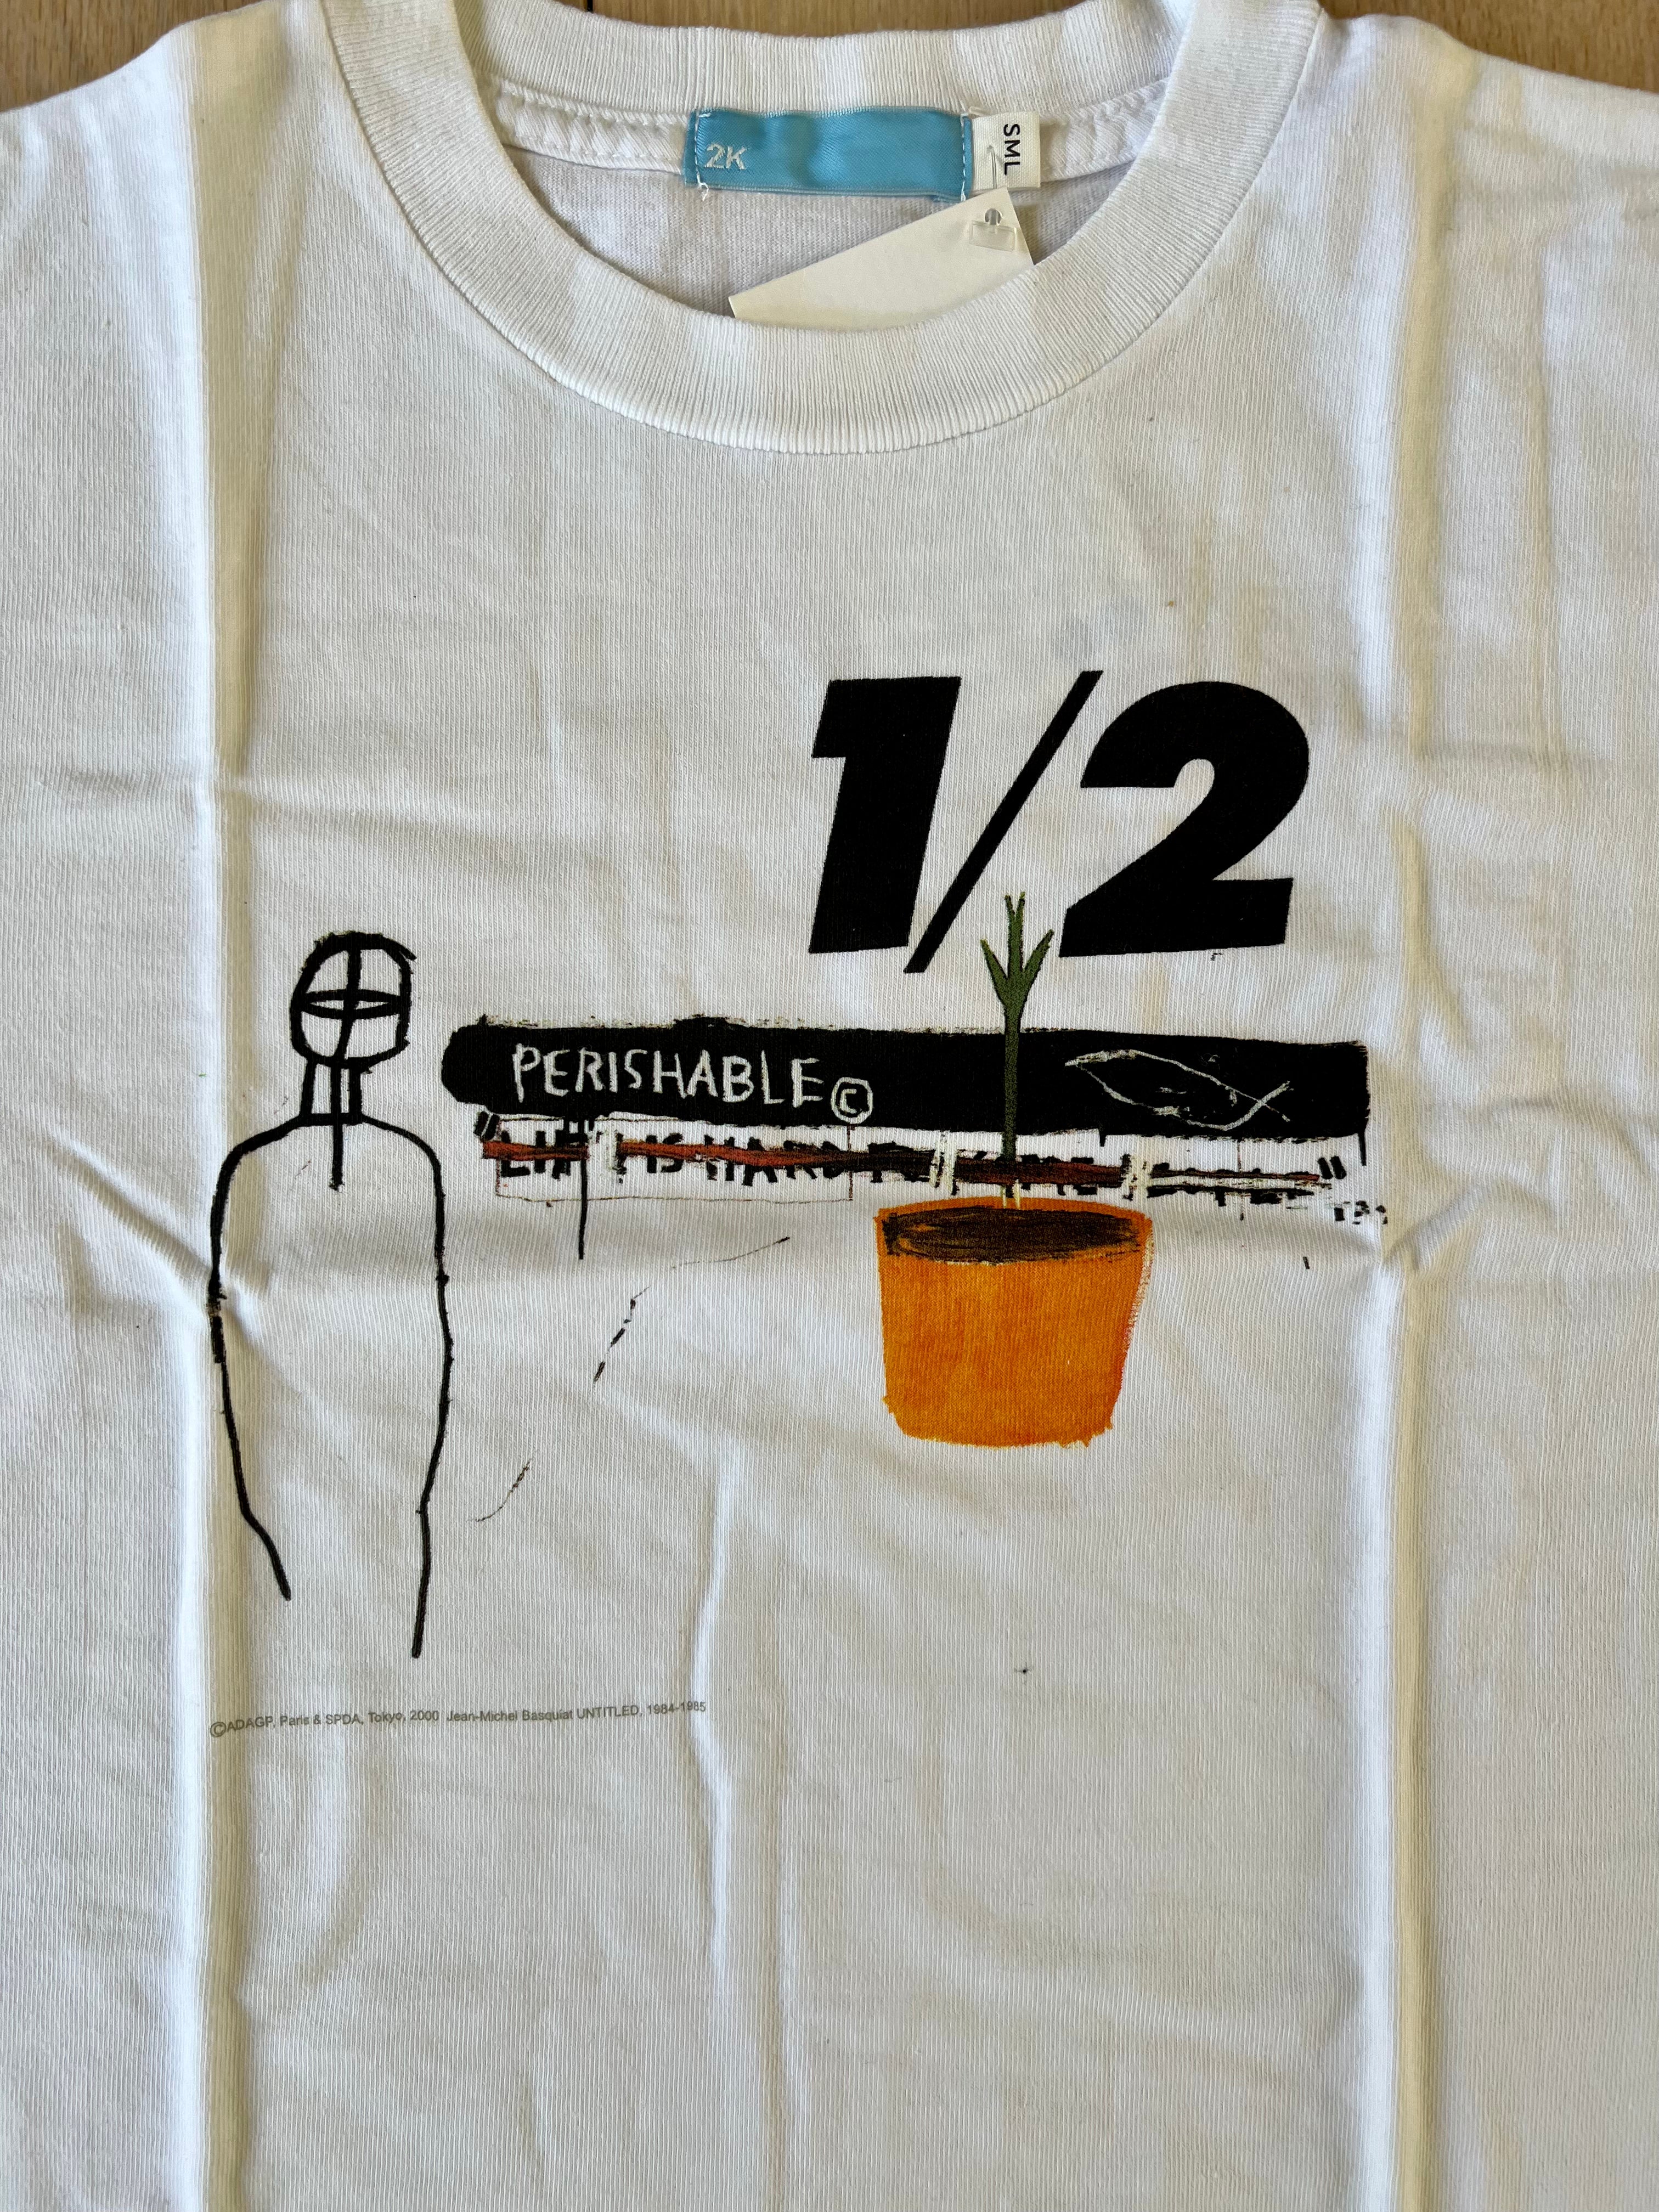 Jean-Michel Basquiat x 2K, Perishable, c. 2001